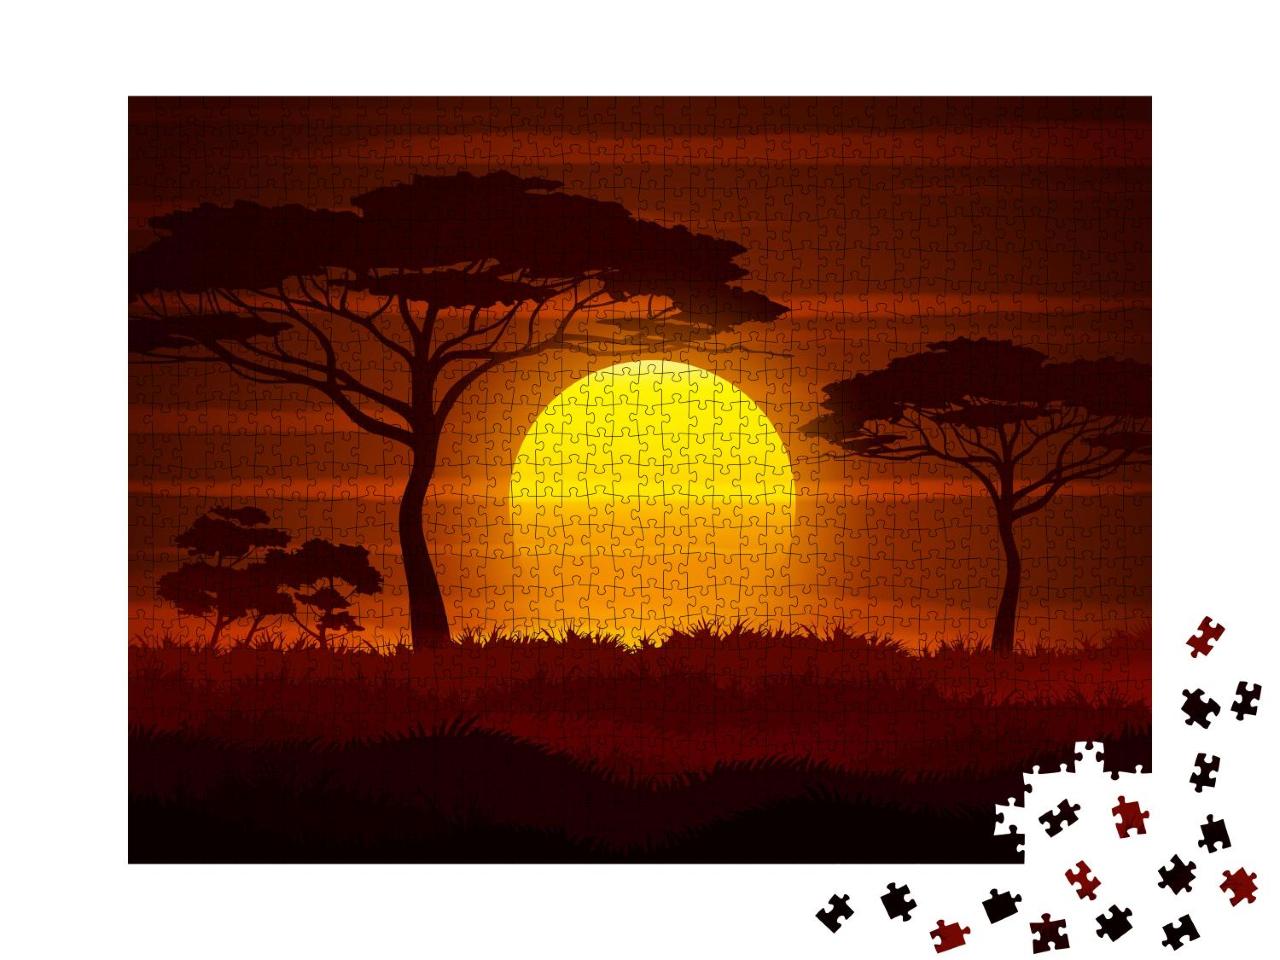 Puzzle 1000 Teile „Vektor-Illustration: Sonnenuntergang in der afrikanischen Savanne“